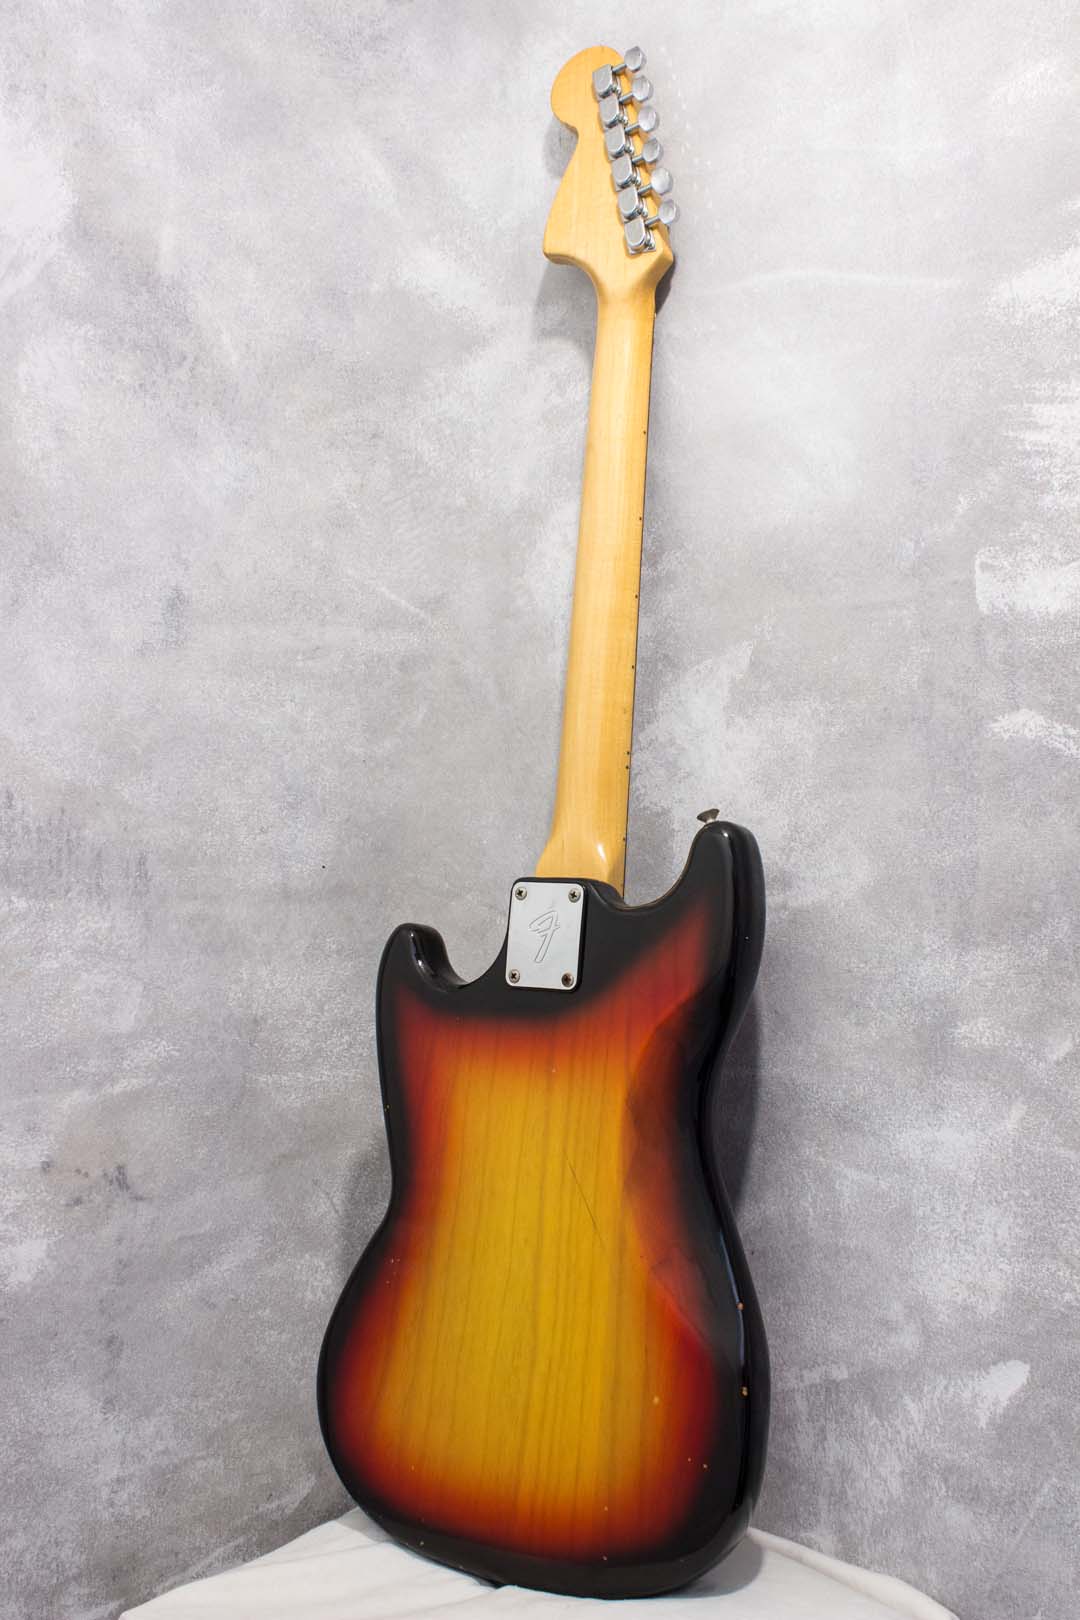 Fender Mustang Sunburst 1977